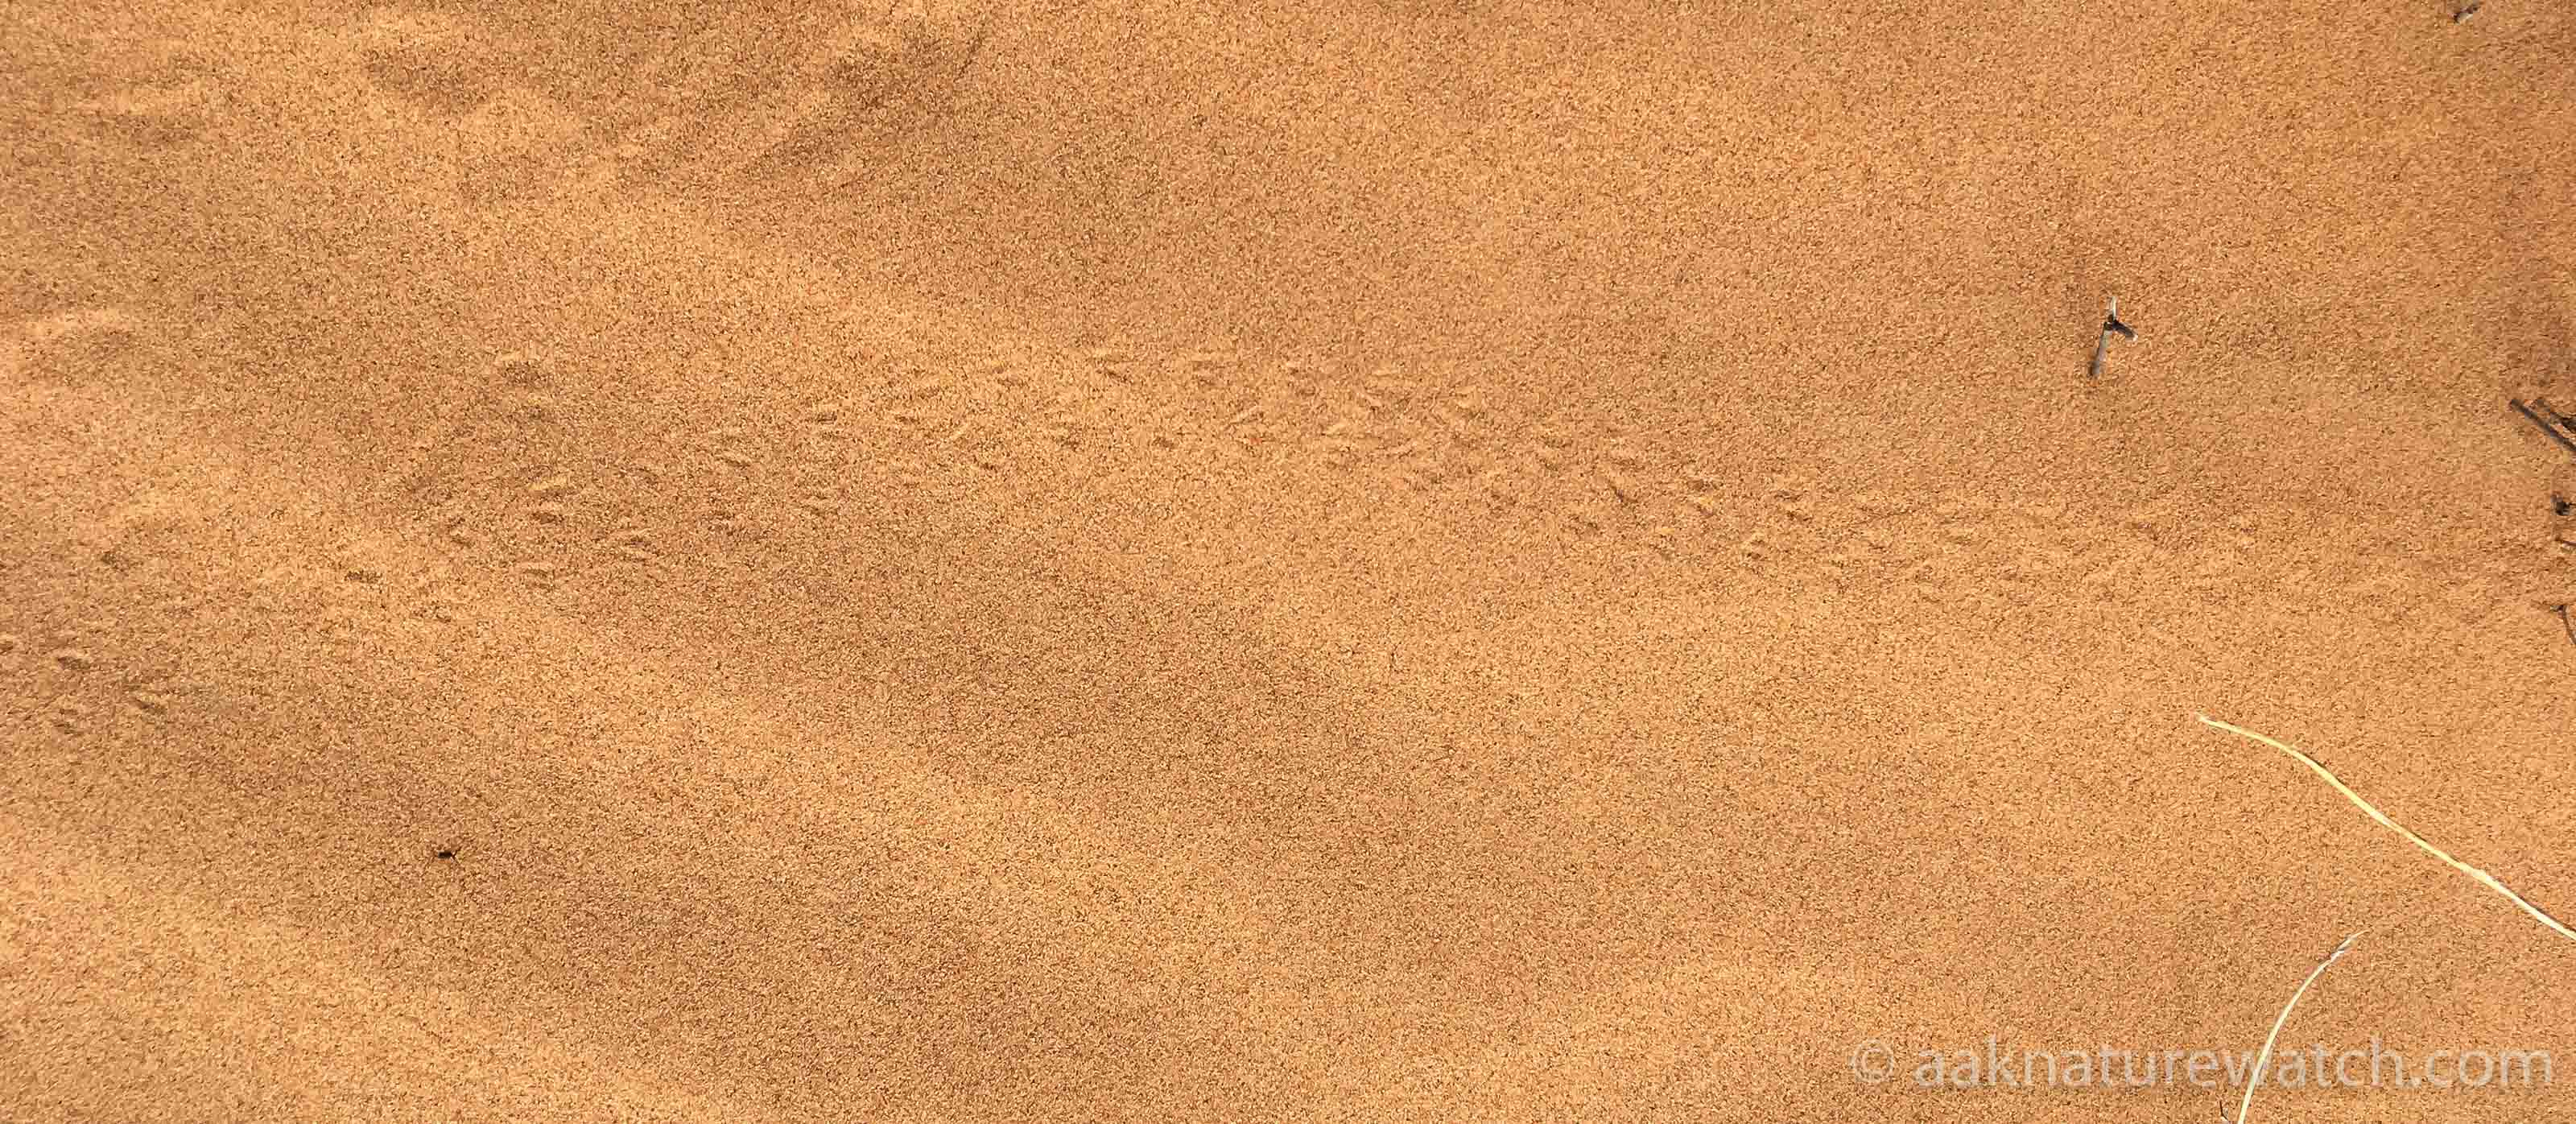 砂丘に残されたセスジムシクイか、オーストラリアムシクイの足跡